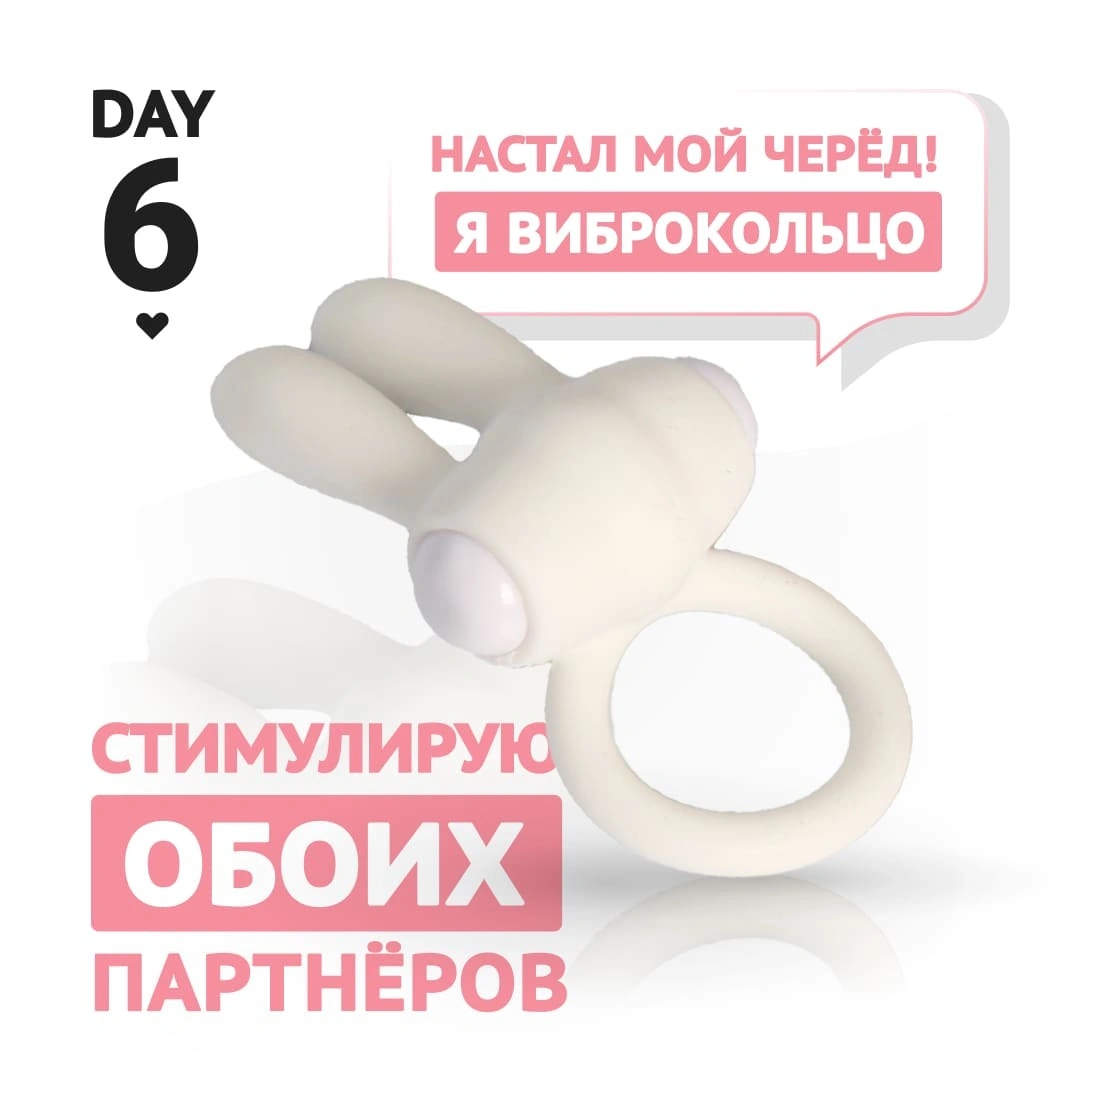 Игровой набор Two weeks of love, игра для взрослых, 14 товаров Vestalshop.ru - Изображение 4